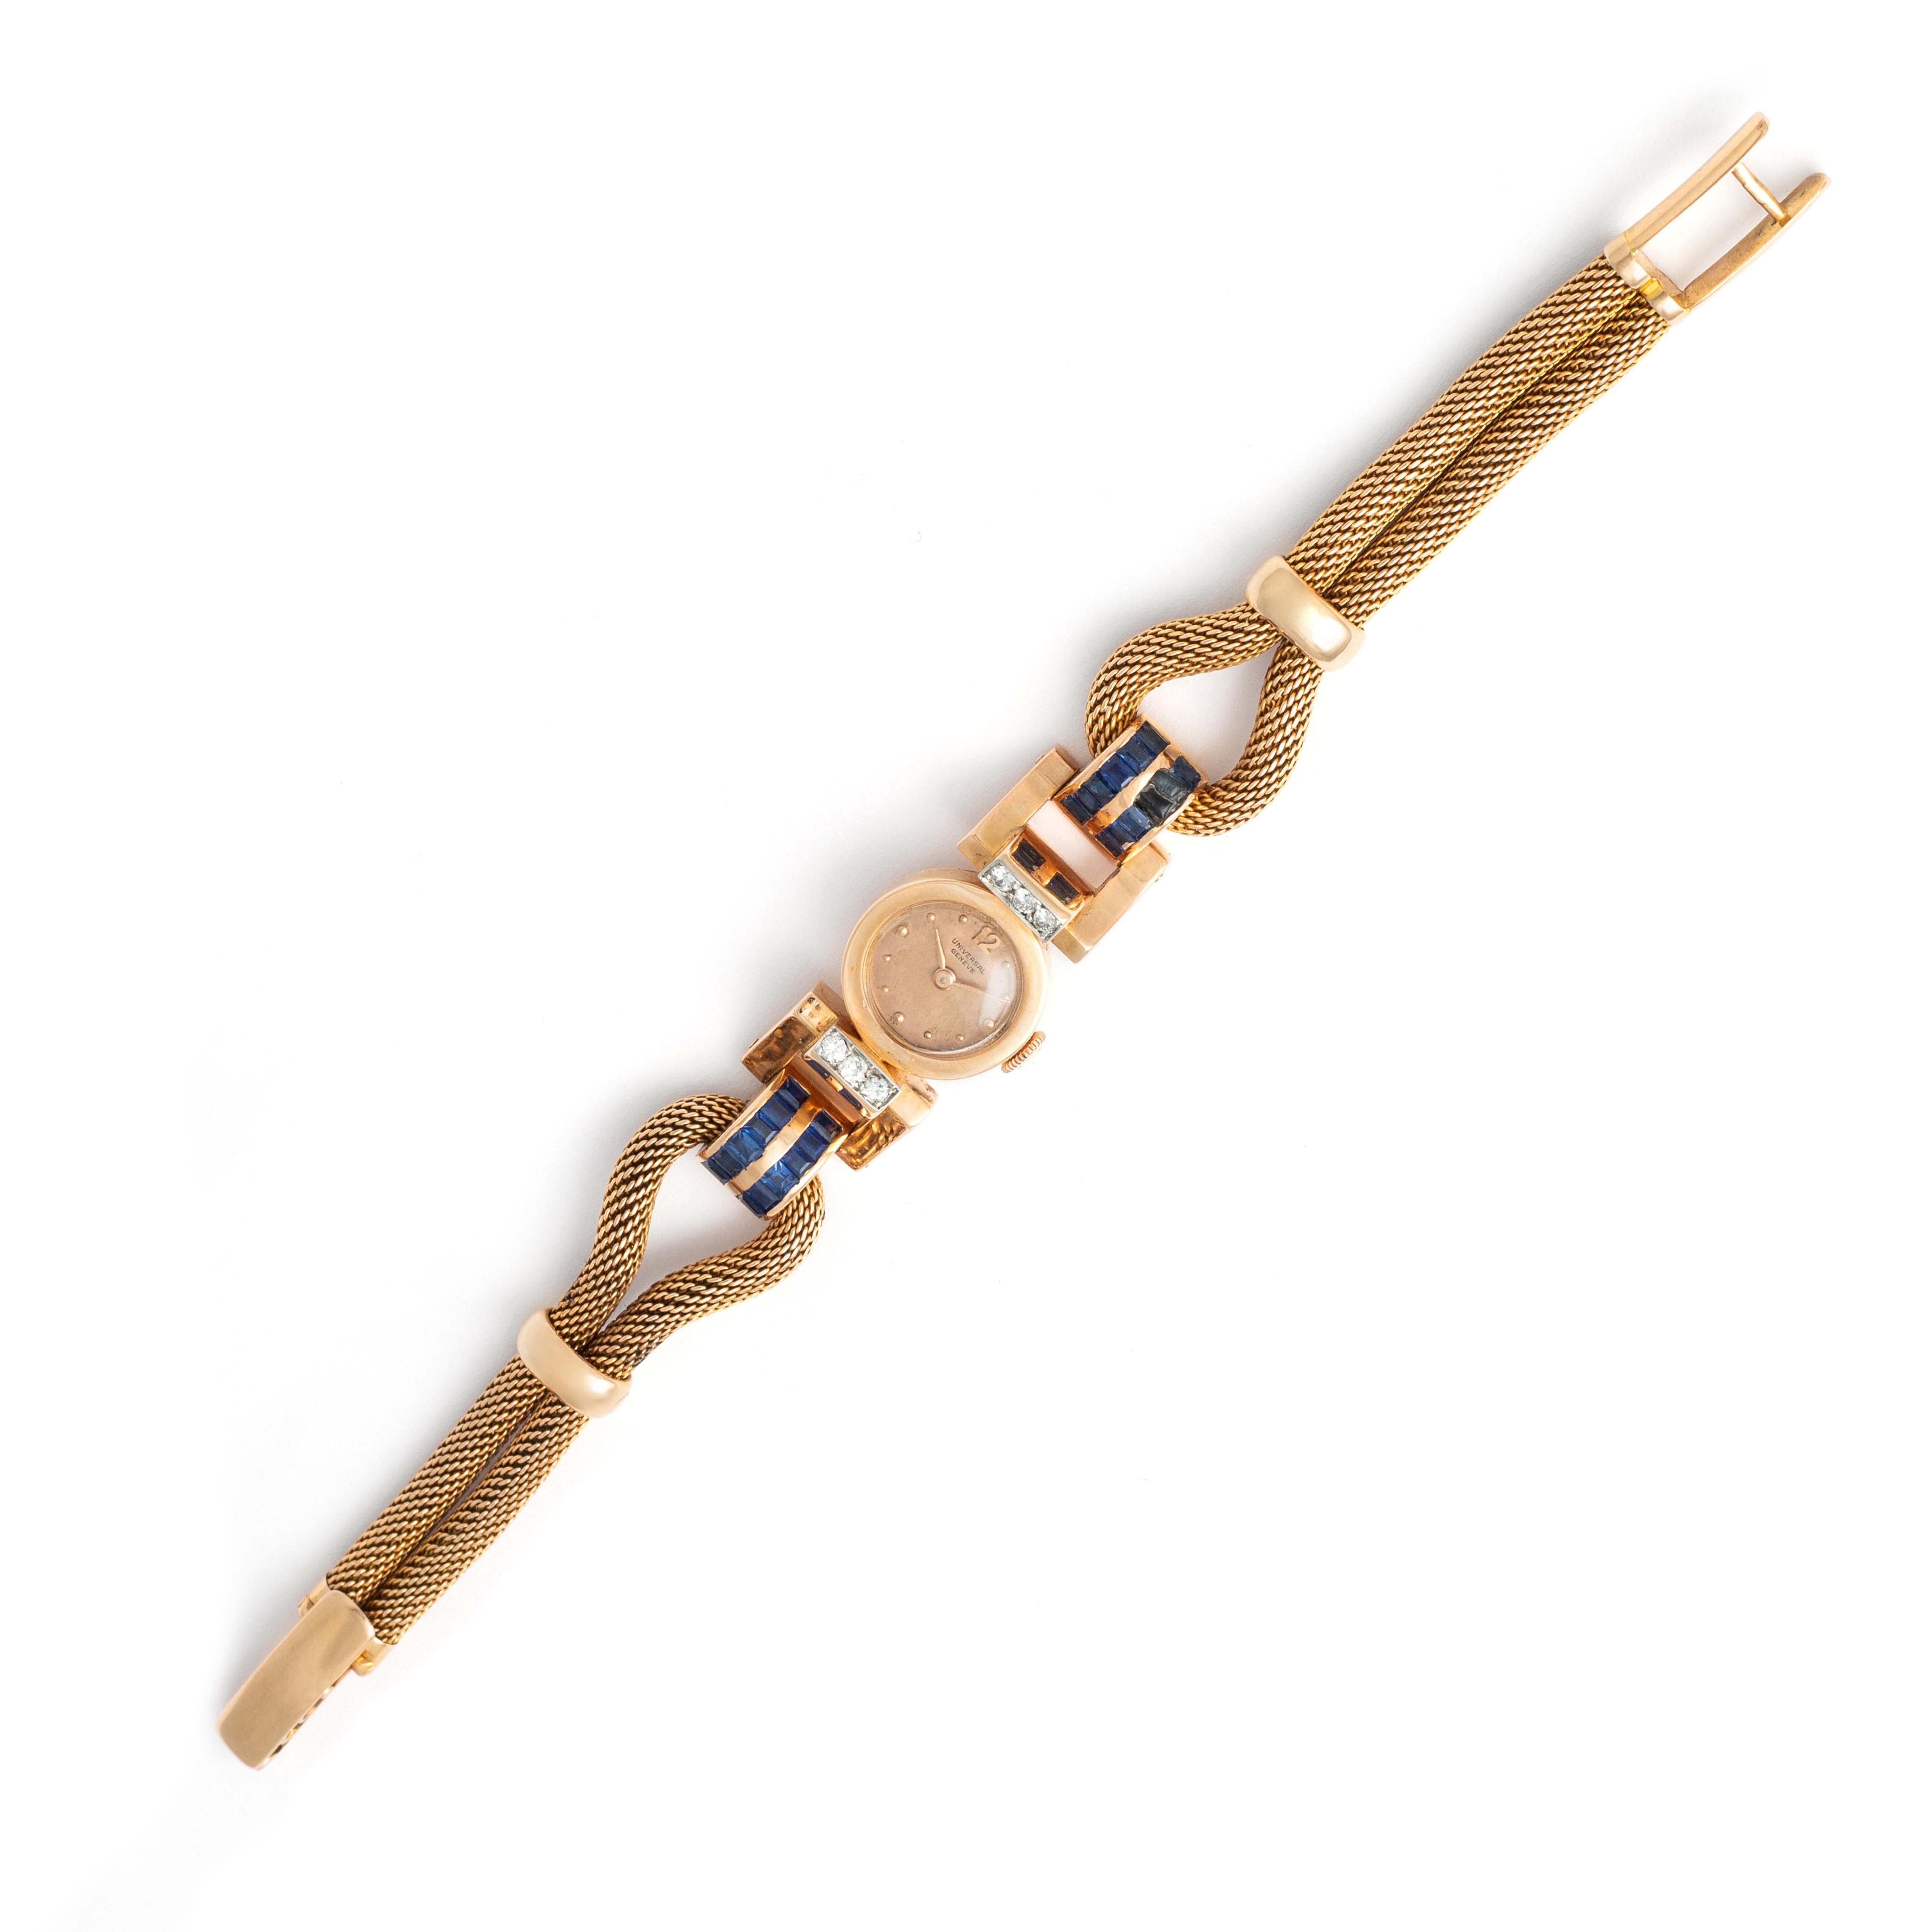 Universal Geneve Retro Diamond Sapphire Gold Wristwatch.
Circa 1940. Fabriqué en Suisse.
Longueur du poignet : environ 18,50 centimètres.
Dimensions du boîtier : 1,50 x 1,50 centimètres.
Poids total brut : 51.91 gramme.

Nous ne garantissons pas que